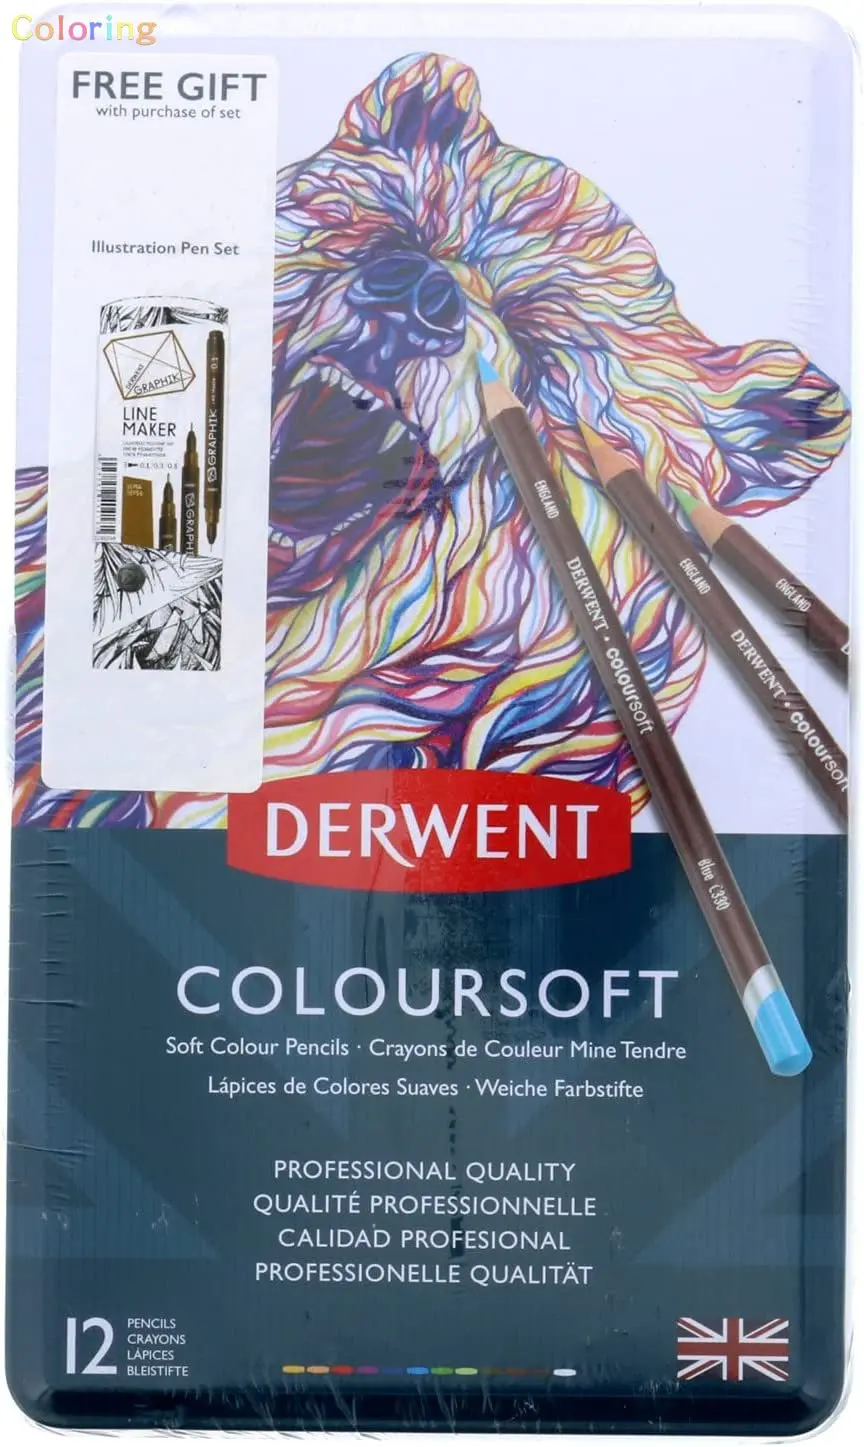 Цветной карандаш Derwent Coloursoft, 1 количество (упаковка из 1), многоцветный, 12 цветов, первоклассное качество, насыщенный пигмент, ровный кремовый слой.